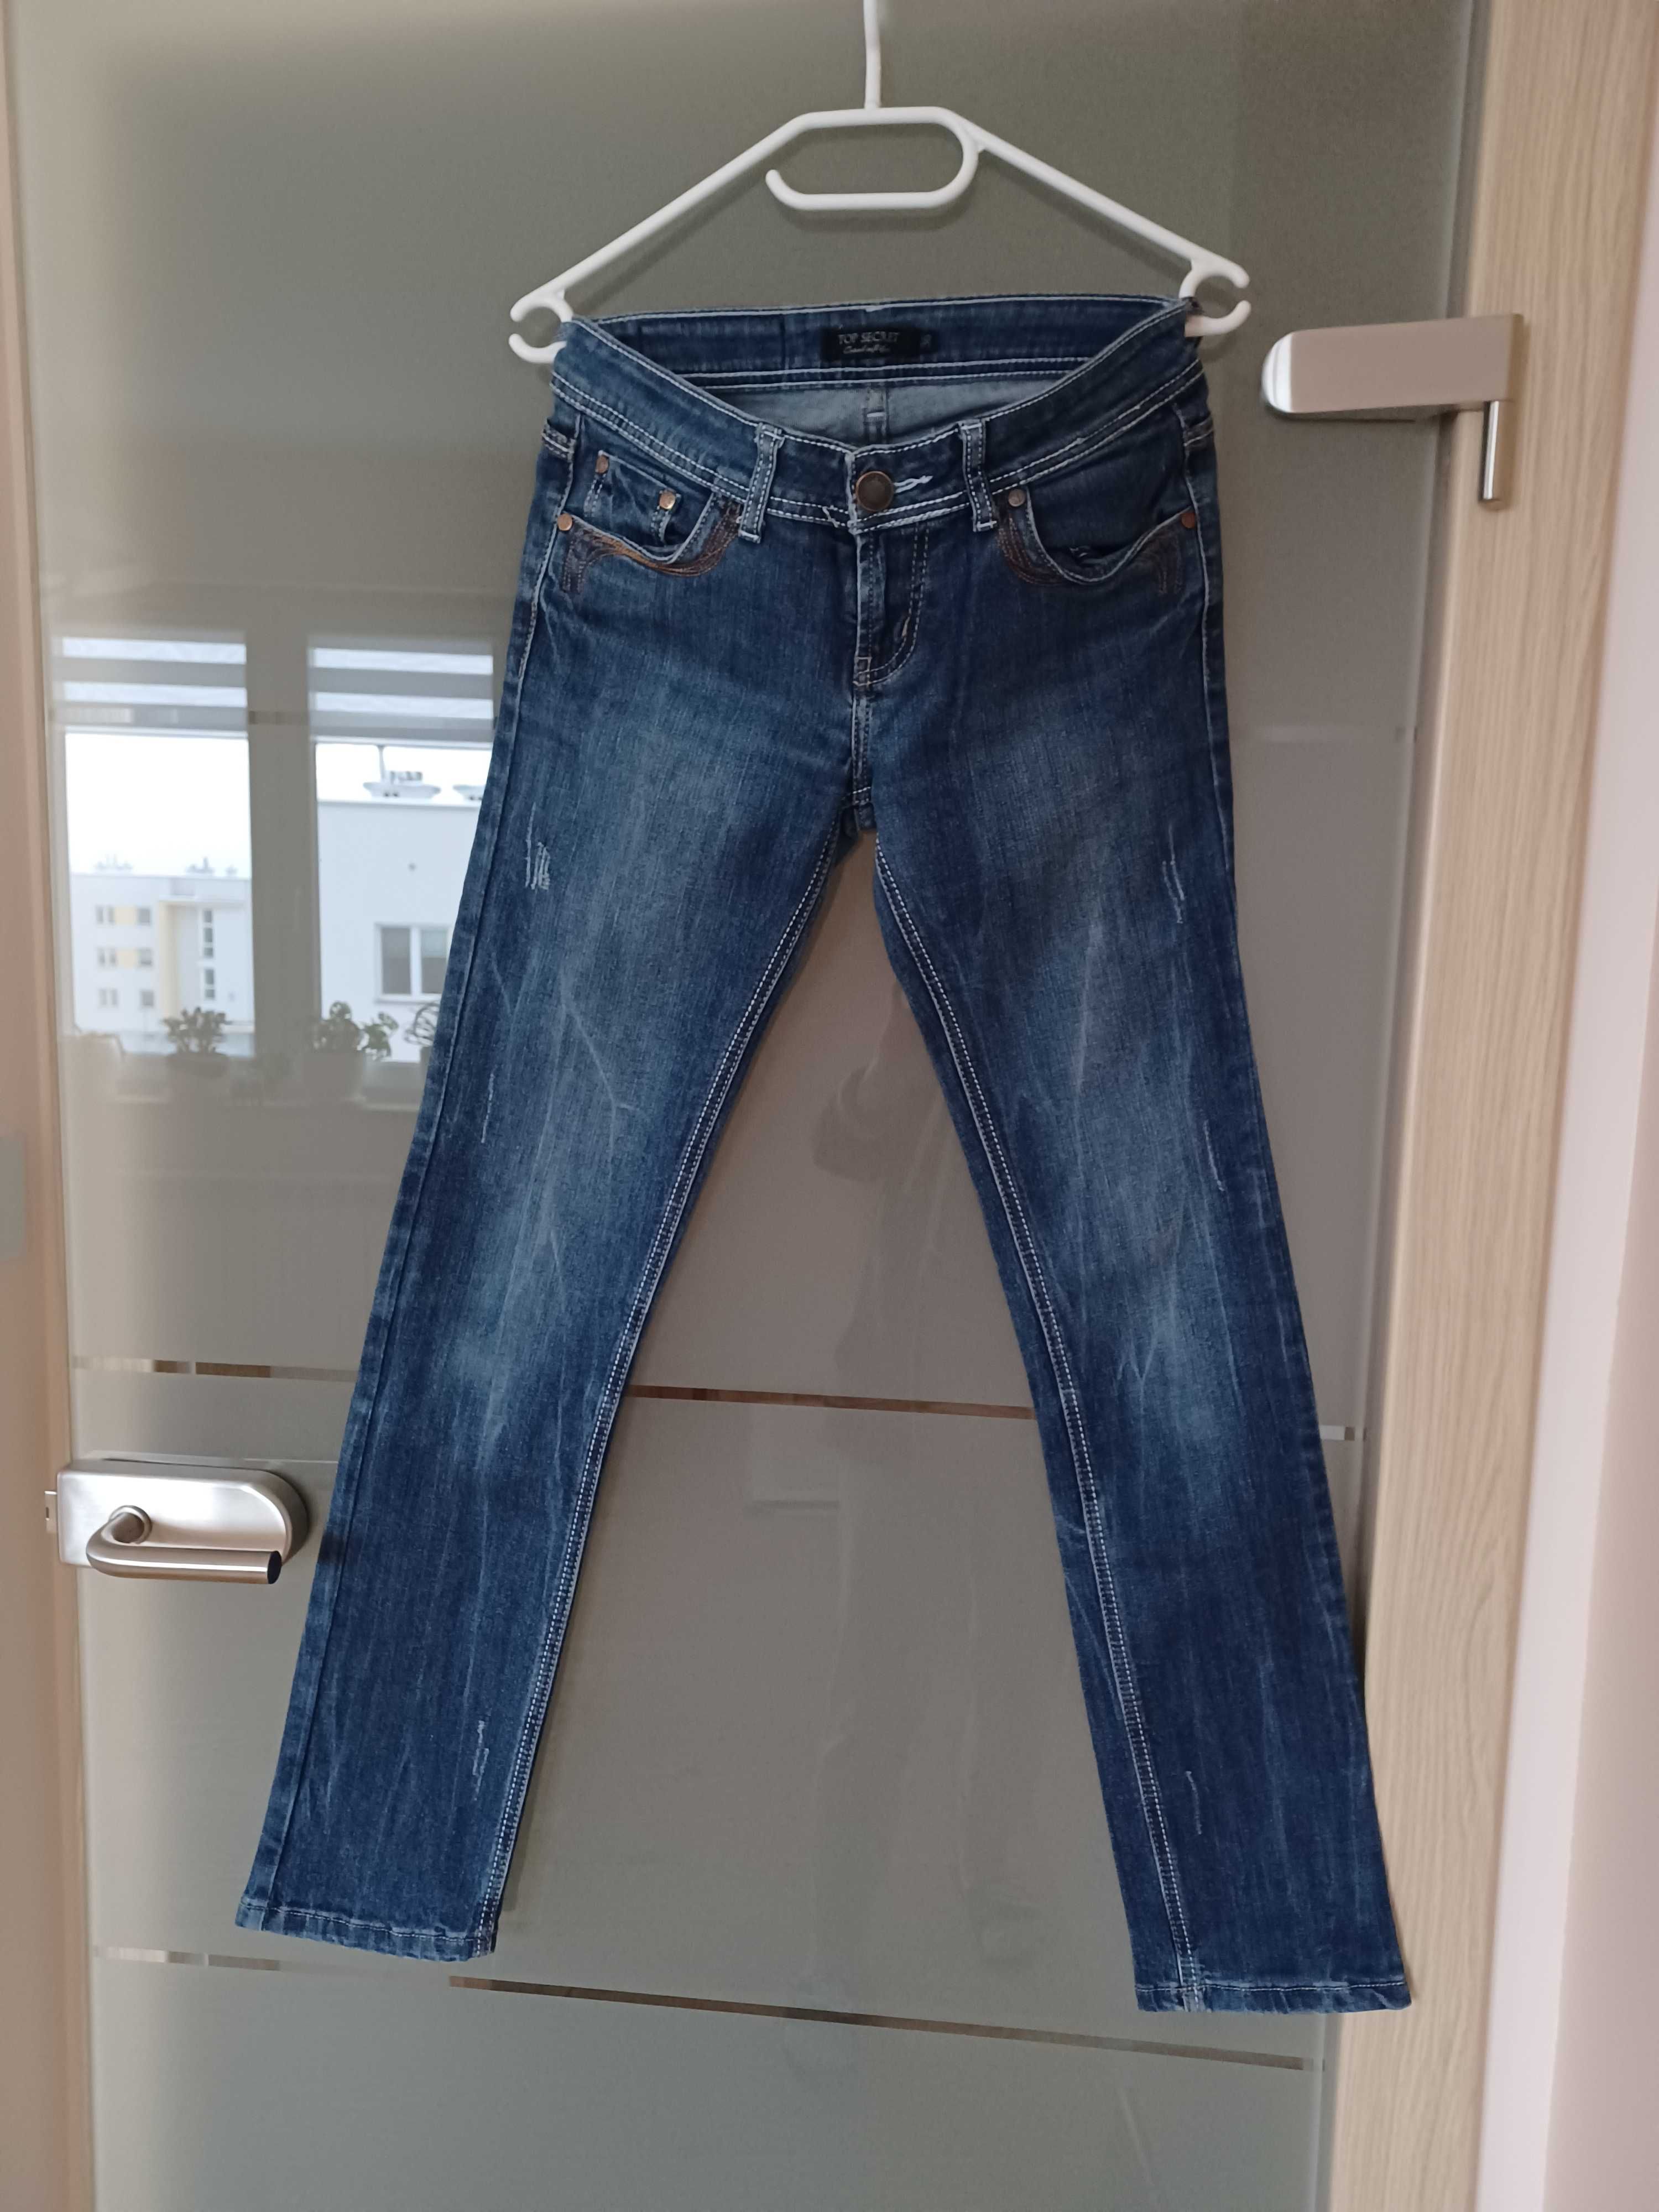 s14. Cudowne jeansowe Spodnie marki Top Secret rozmiar 36.